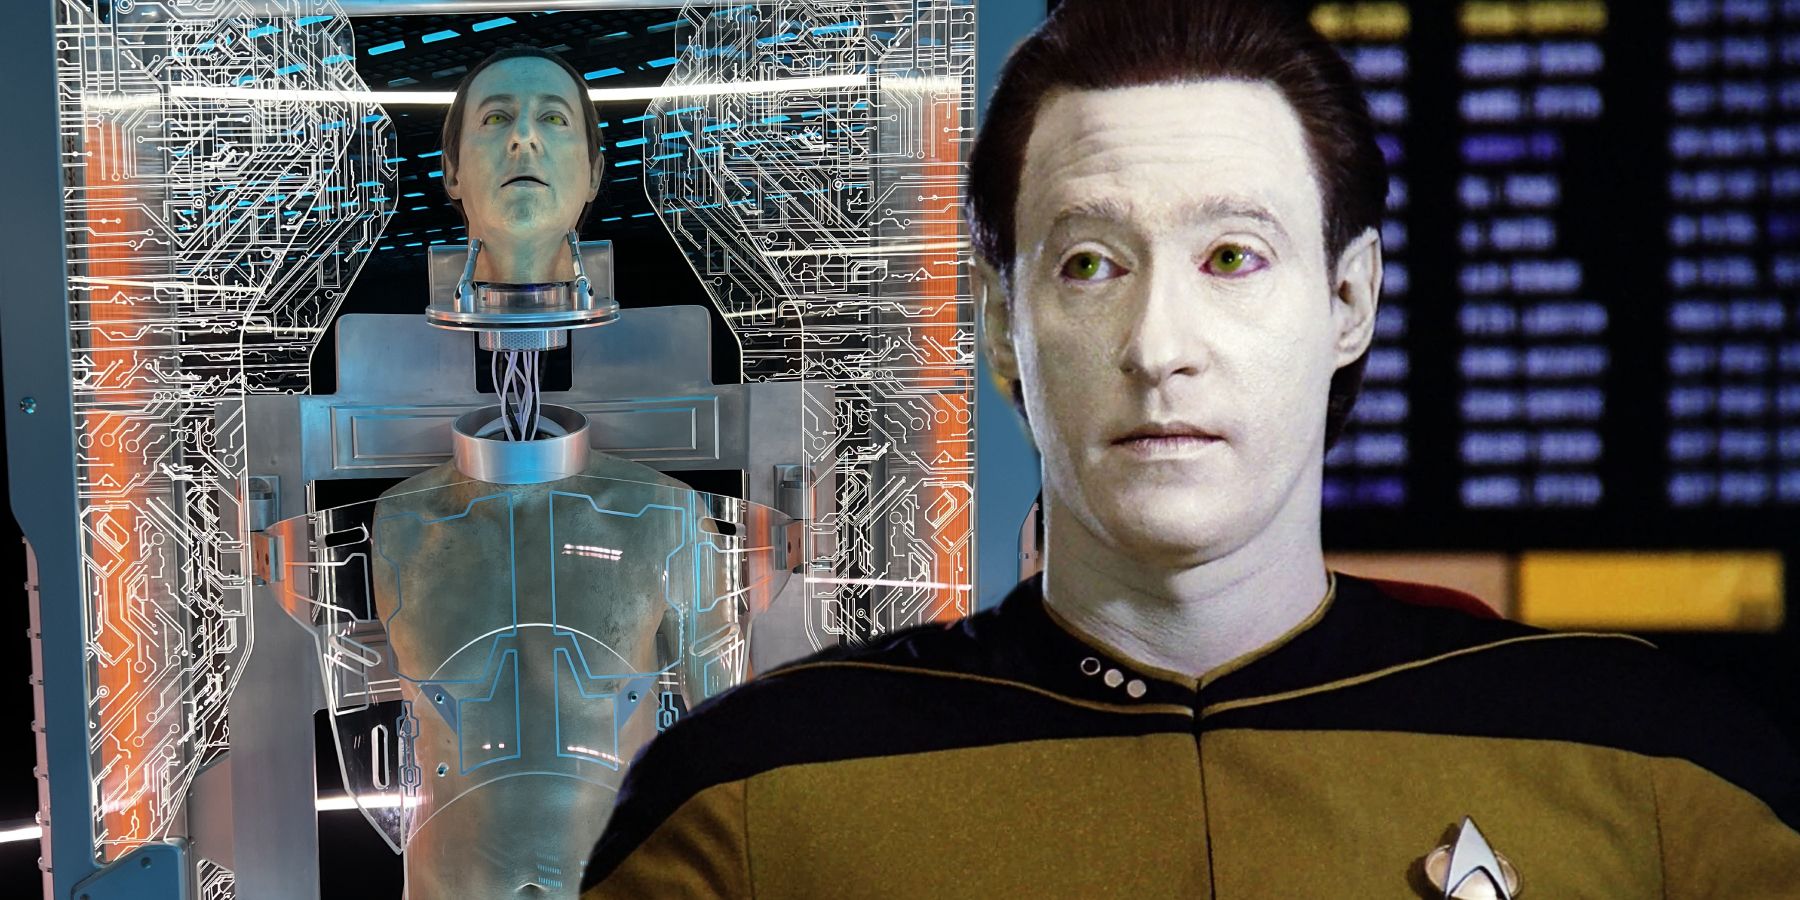 “Datos, ¿qué has hecho?”: Star Trek acaba de confirmar la mayor mentira sobre la forma humana de los datos